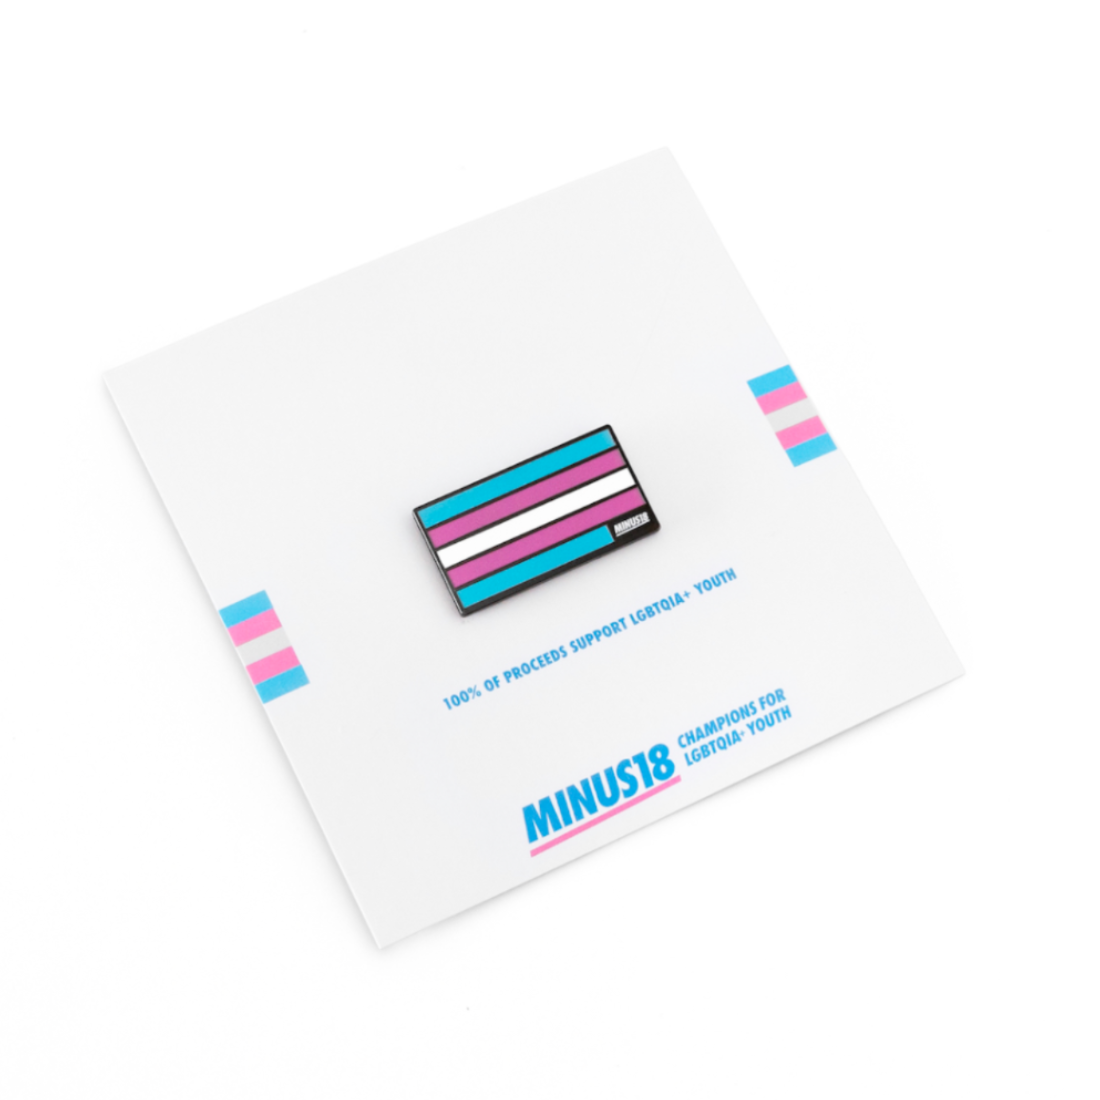 Trans pride flag enamel pin